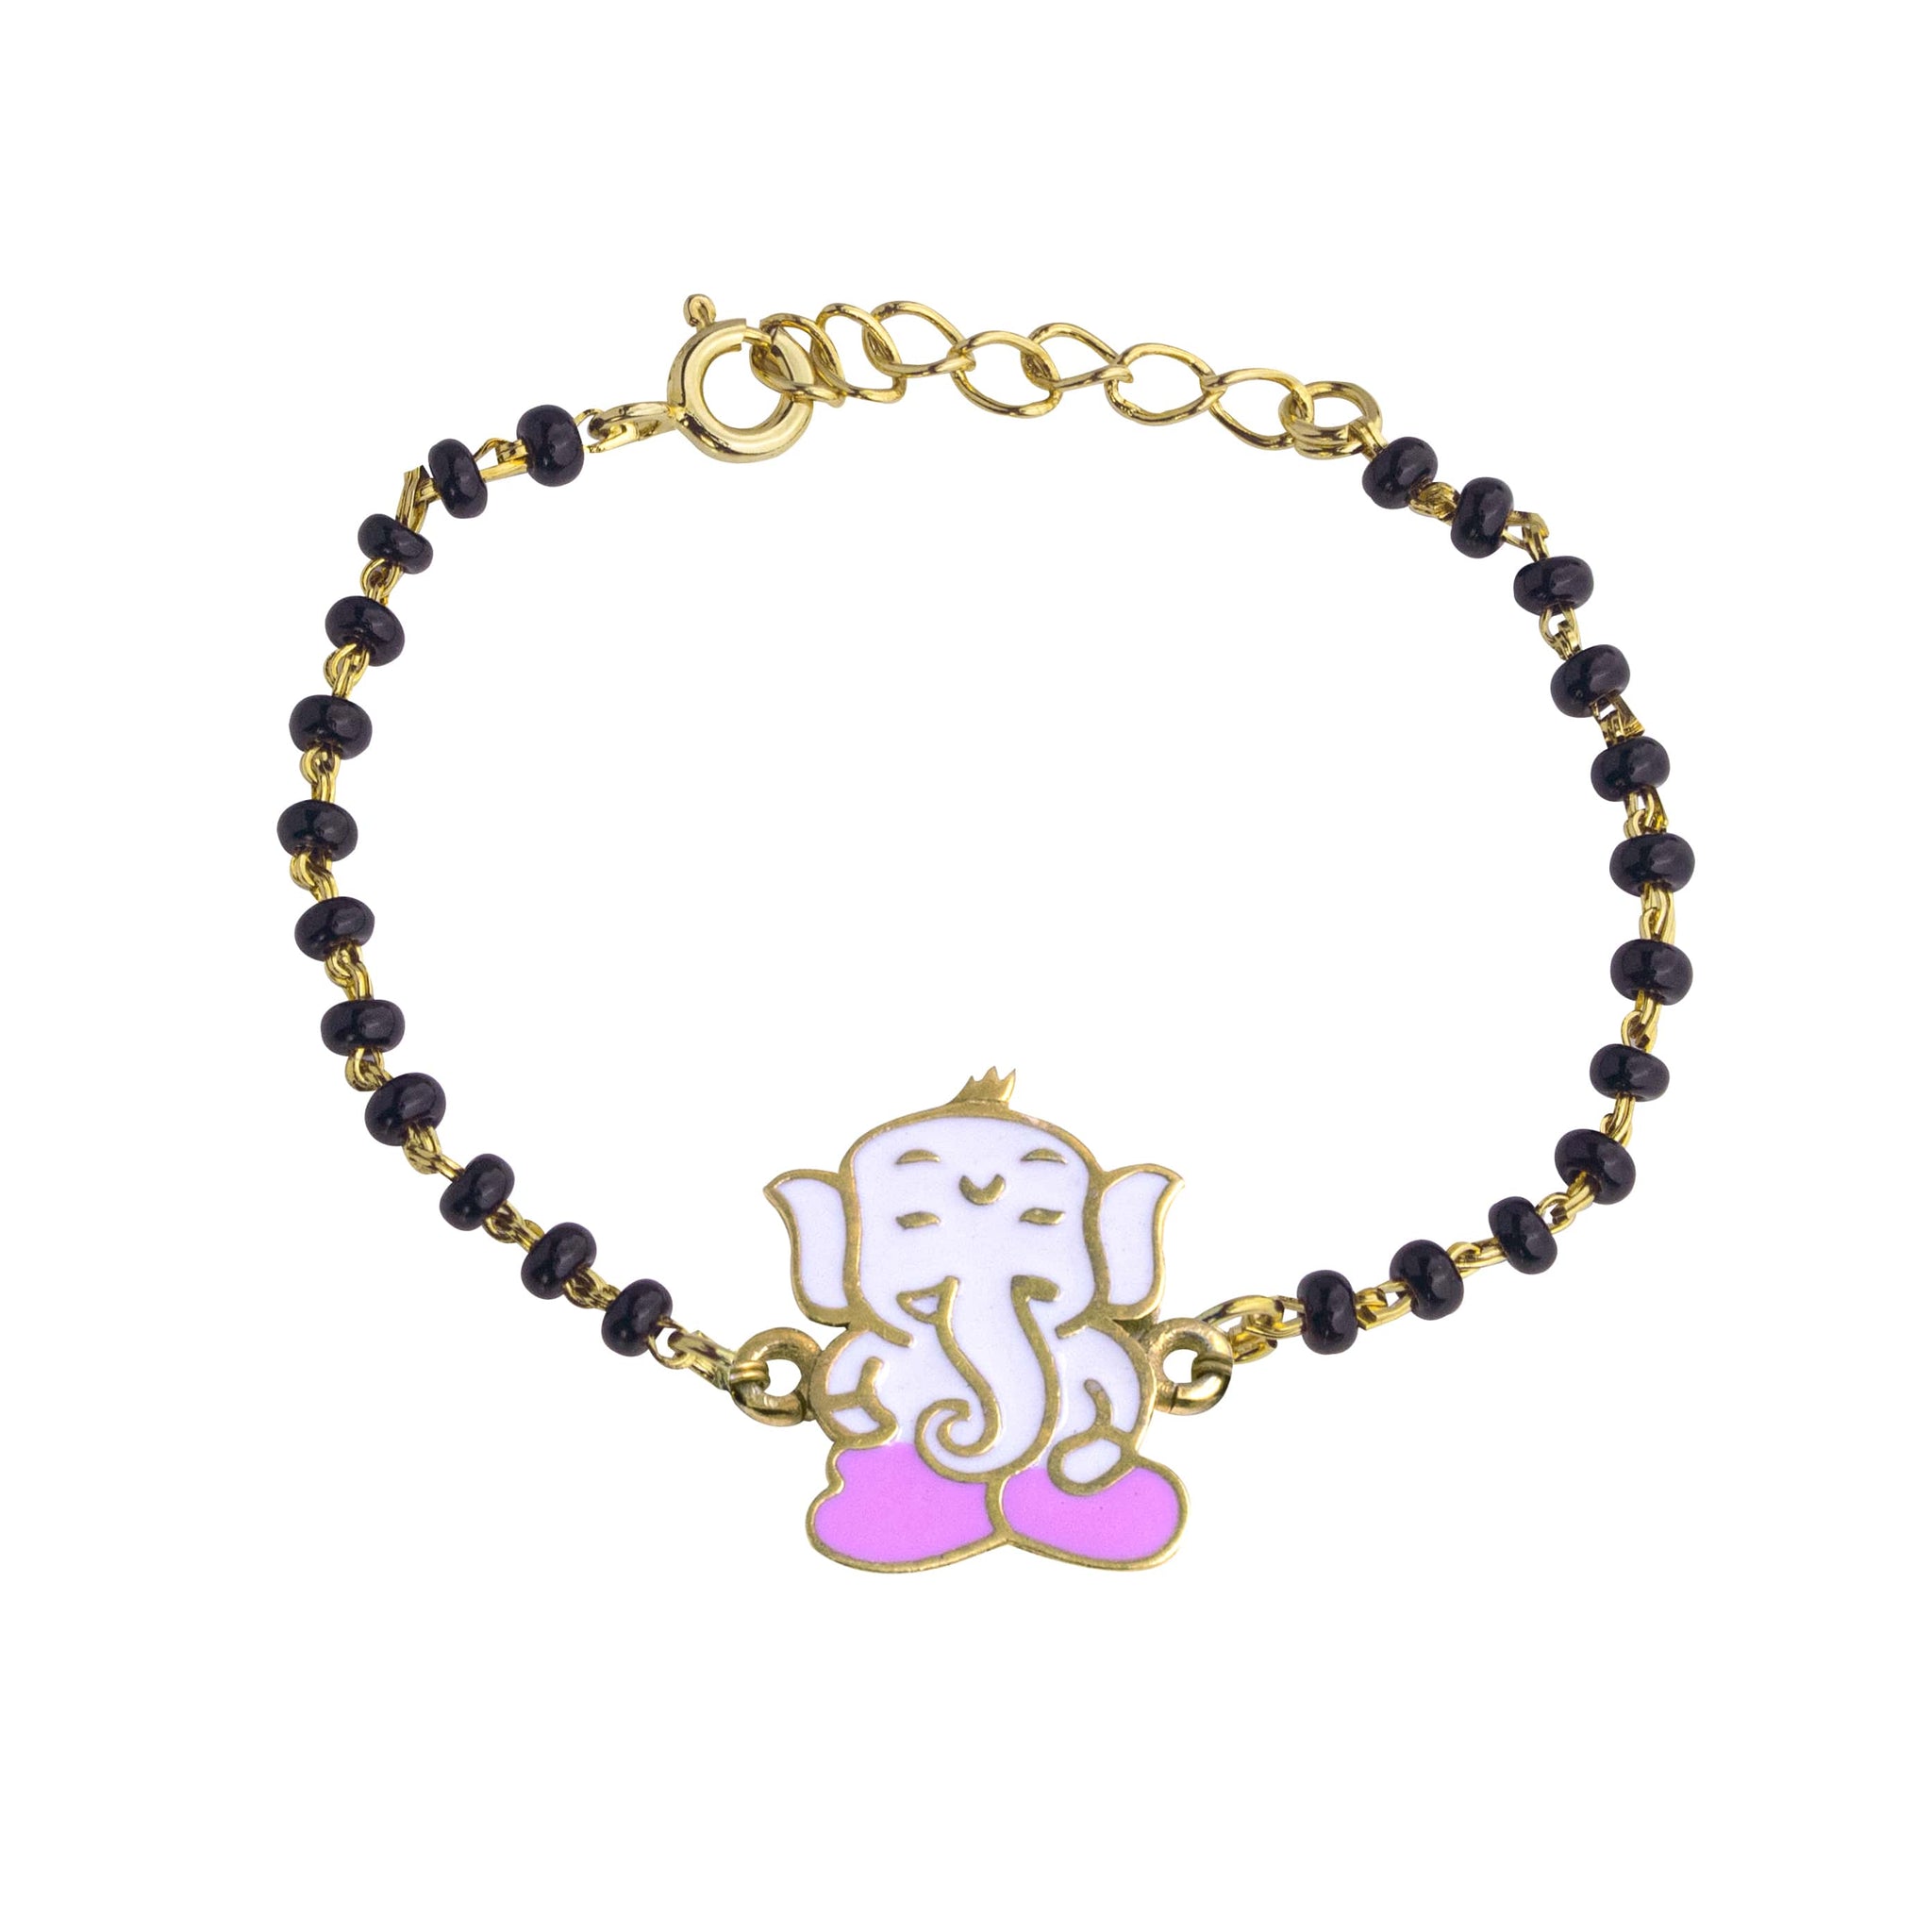 22ct Yellow Gold Baby Bracelet Black & Gold Beads Maniya / Manka / Nazariya  - Etsy Israel